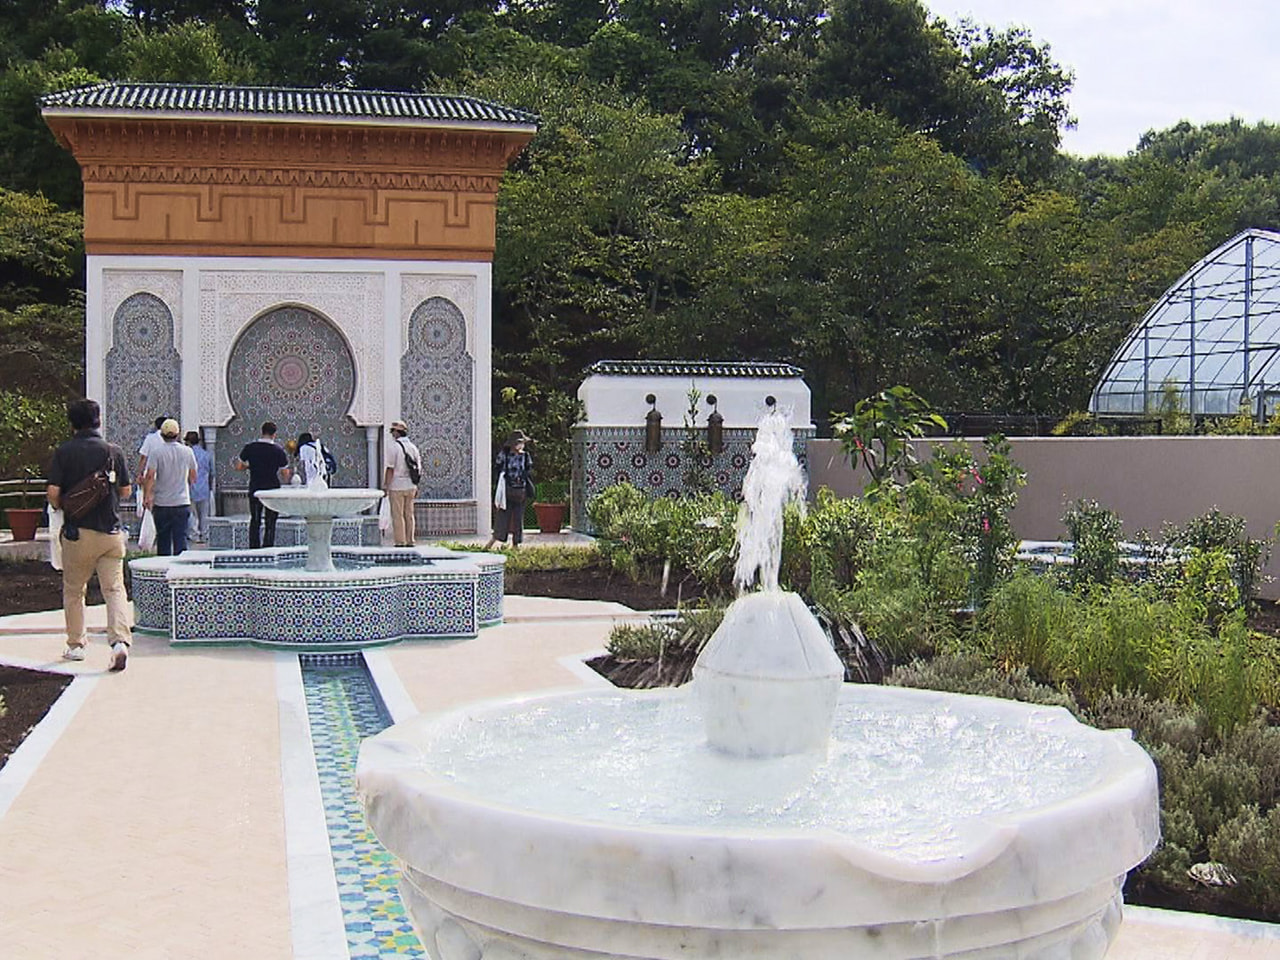 可児市のぎふワールド・ローズガーデンで、モロッコ王国の庭園をイメージした施設のプ...